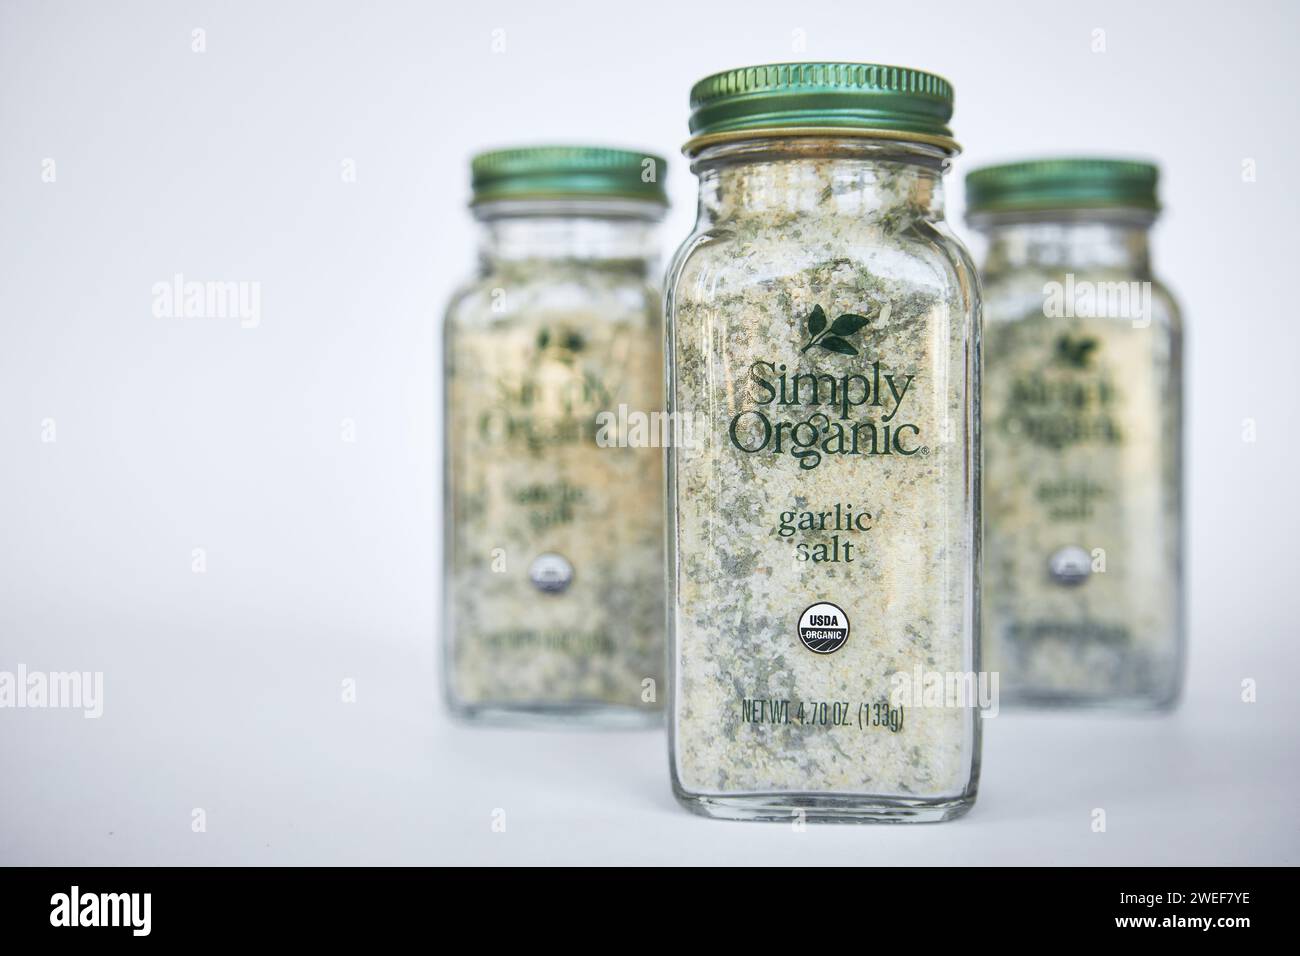 Marque Simply Organic. Trois pots de sel d'ail et d'épices d'assaisonnement d'herbes. Récipient en verre avec couvercle en aluminium vert, emballage recyclable. IHerb onlin Banque D'Images